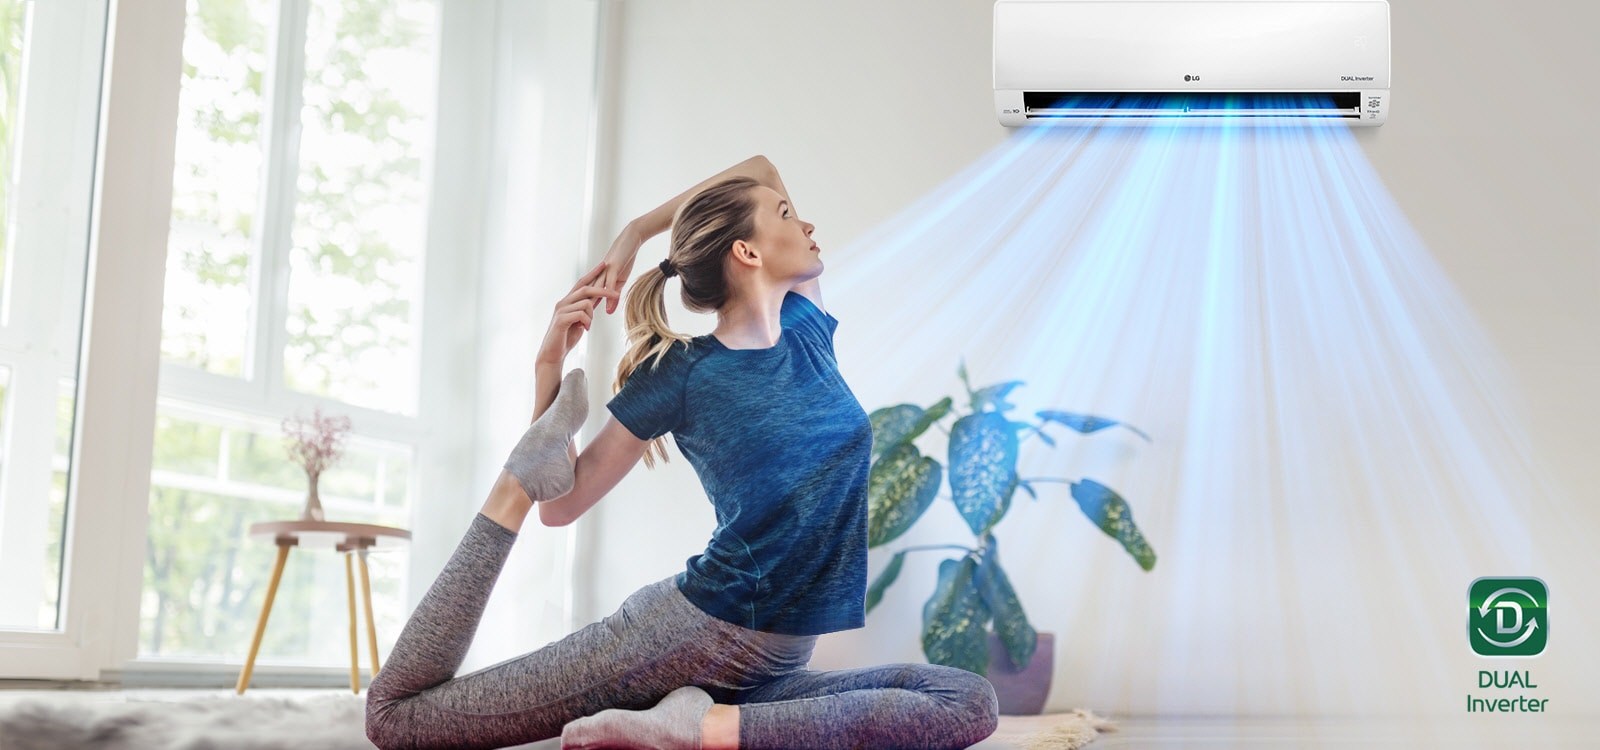 女人在地板上做伸展運動。背景是一台空調，藍色空氣流向女人並環繞空間。雙變頻標誌位於右下角。